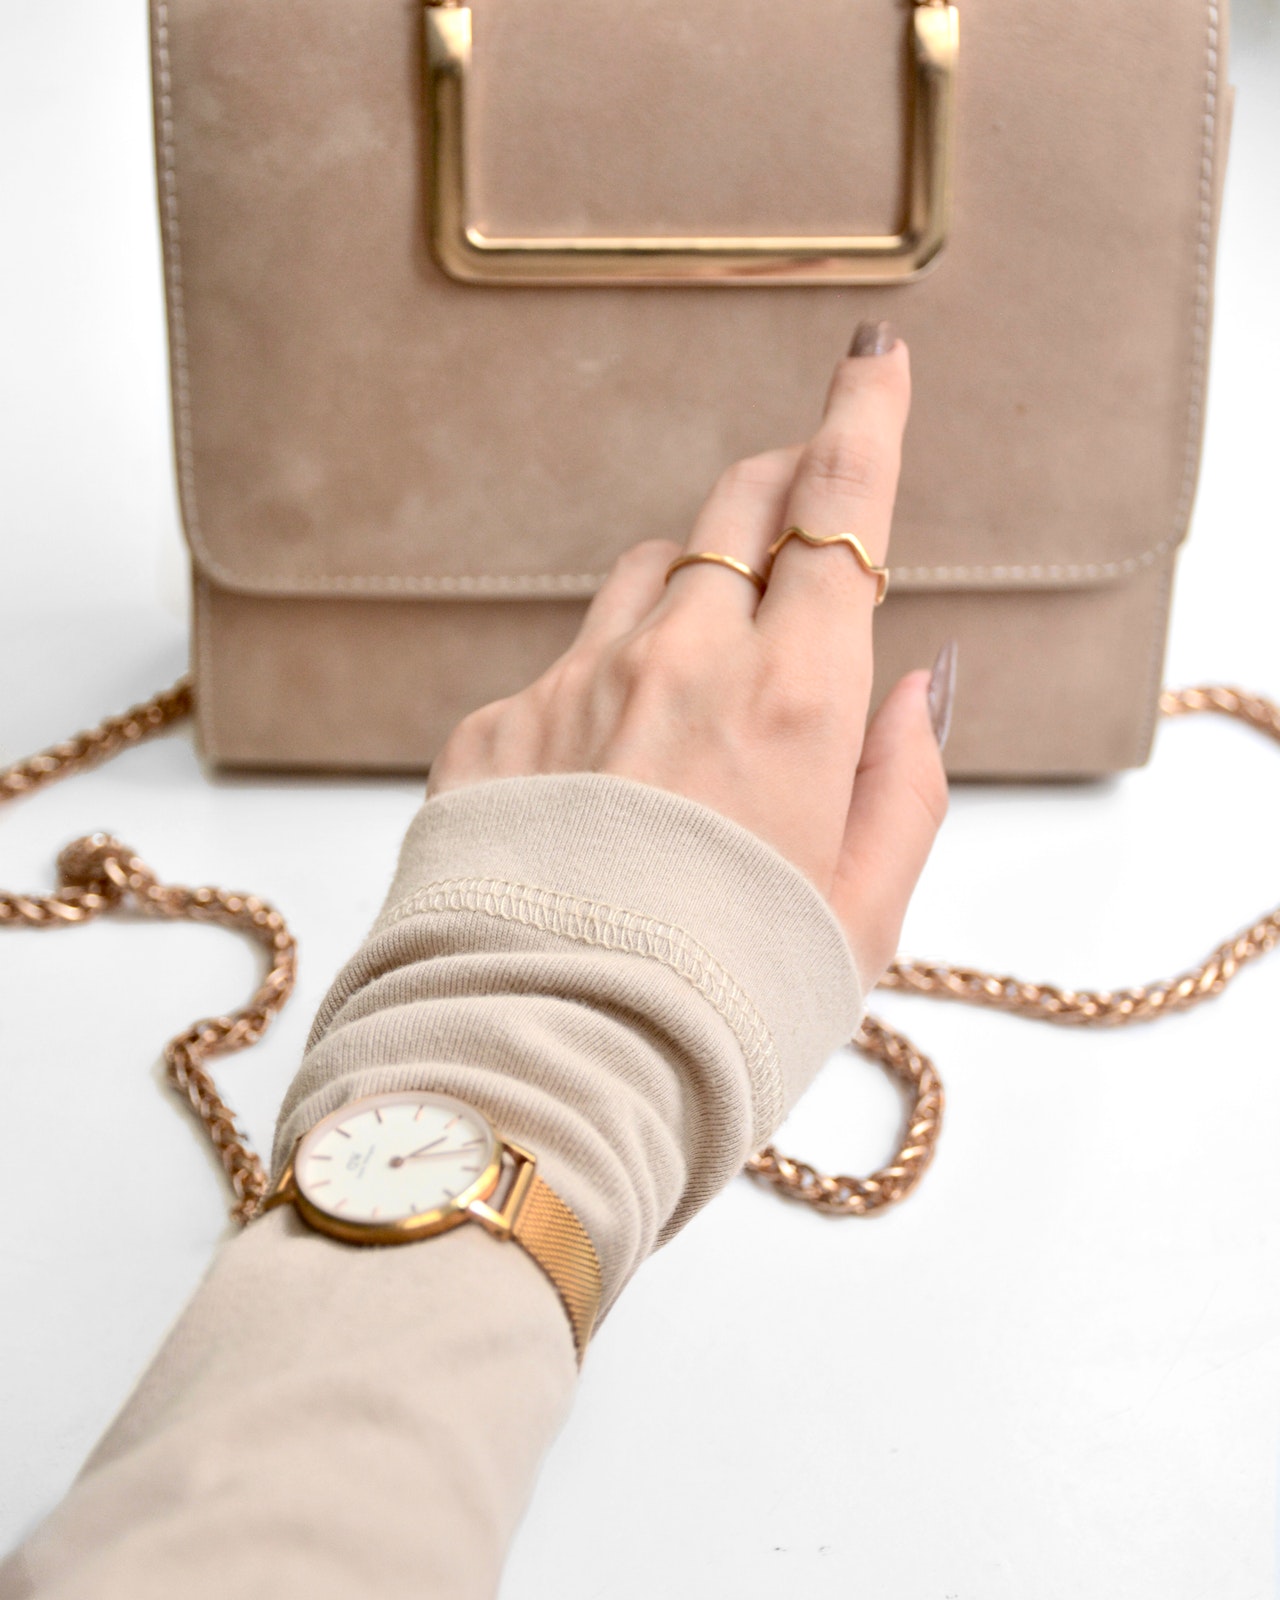 Handtasche mit Kette und Frauenhand mit Ringen und Uhr